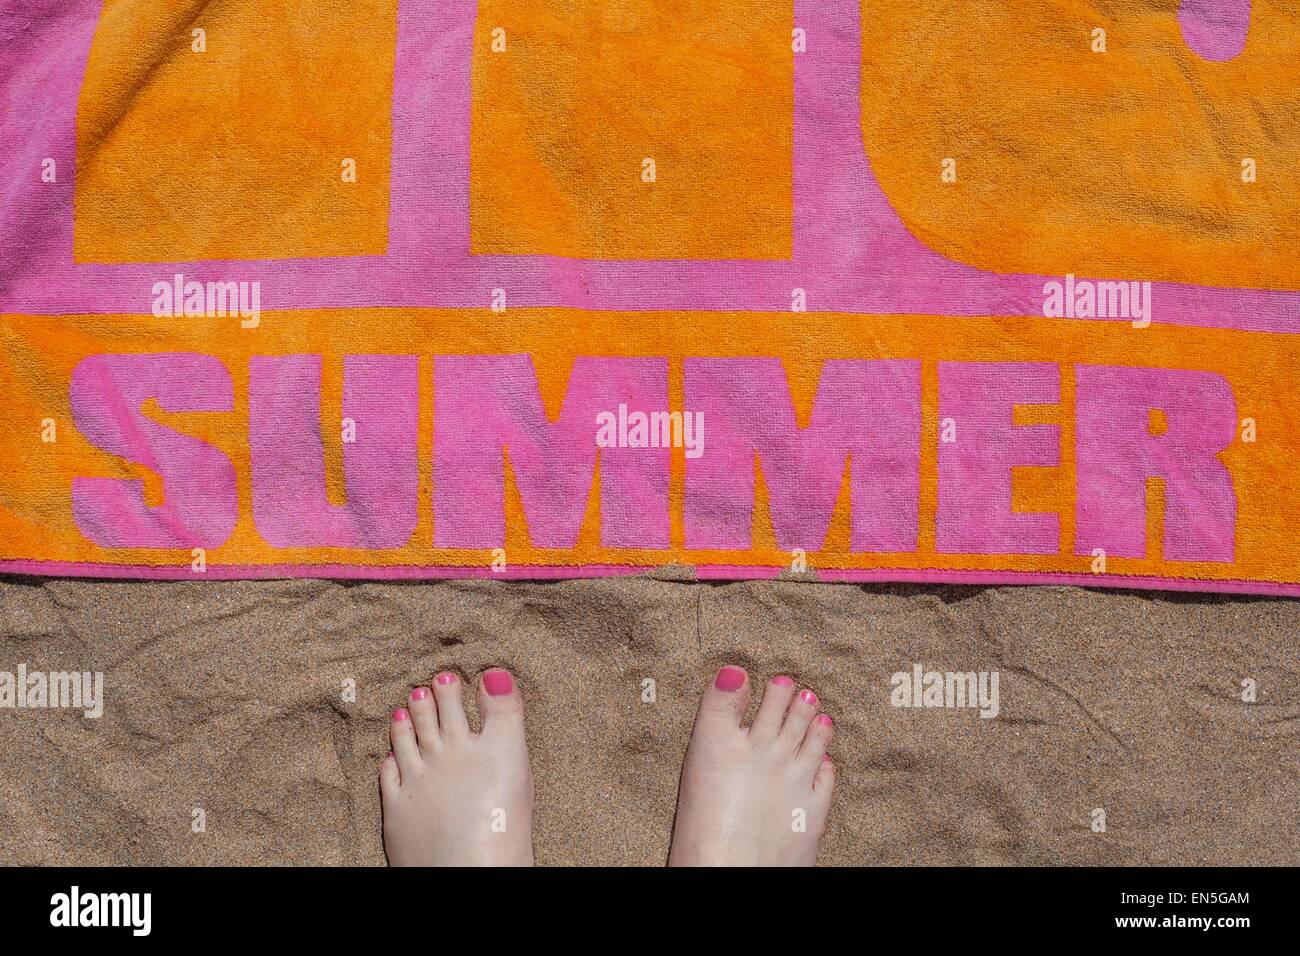 Vue de pieds pieds près d'une serviette de plage colorée sur le sable Banque D'Images